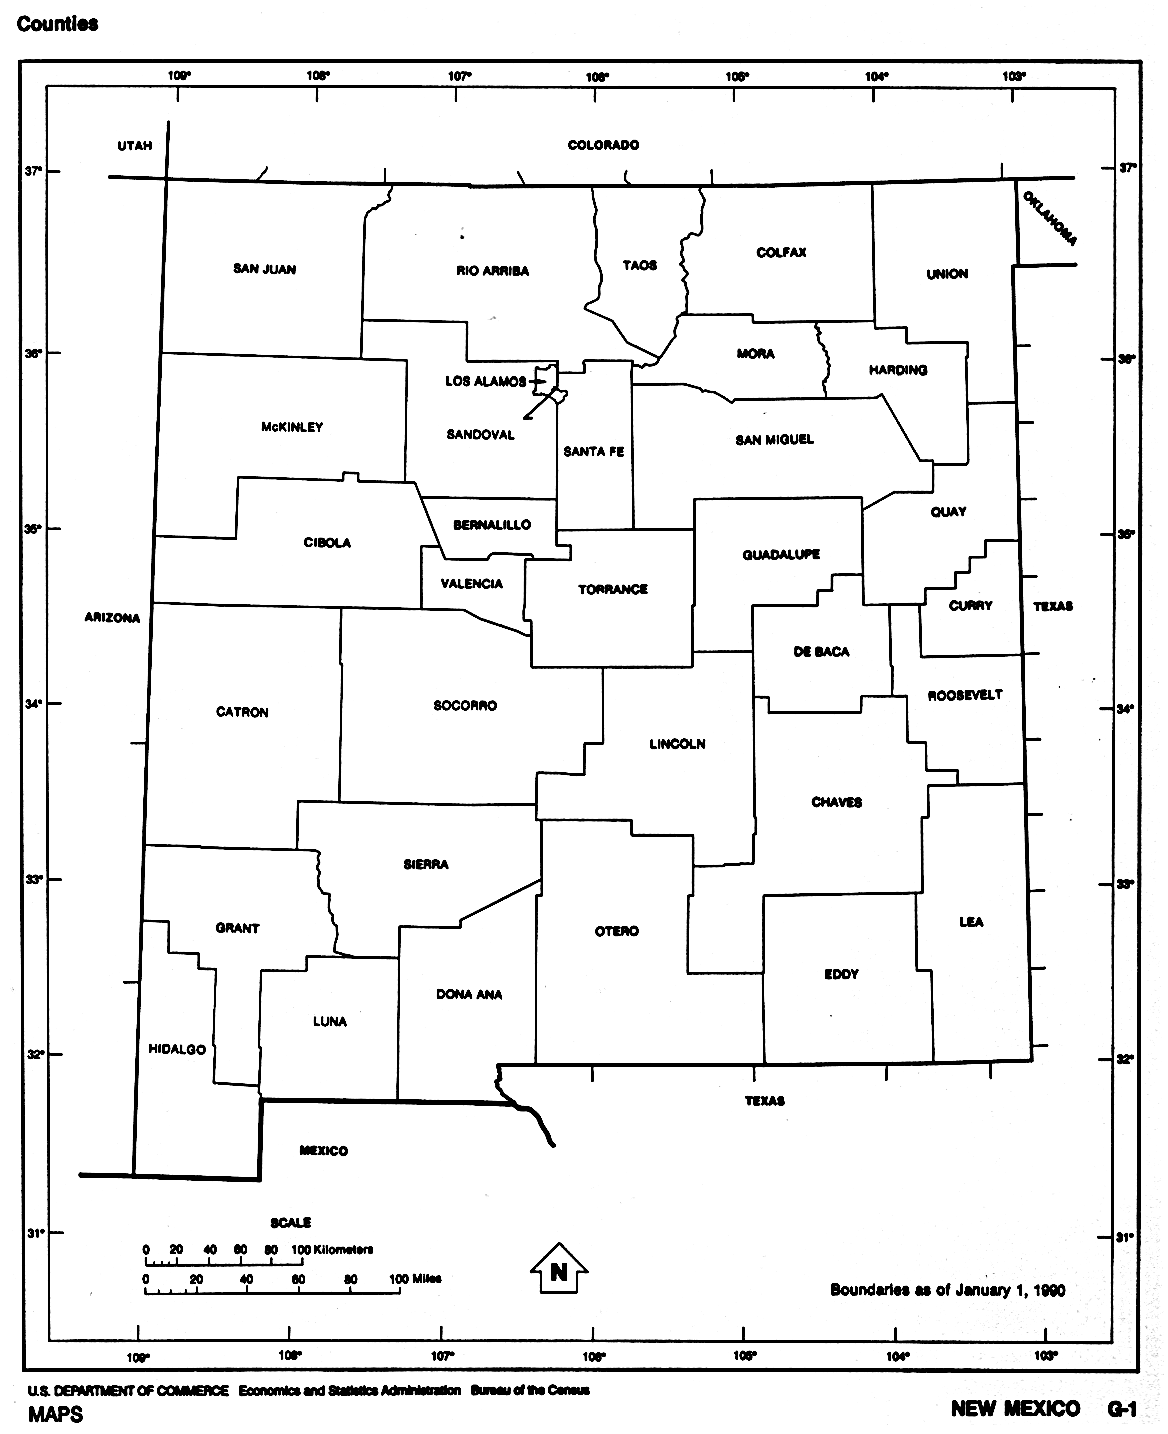 Mapa Blanco y Negro de Nuevo México, Estados Unidos